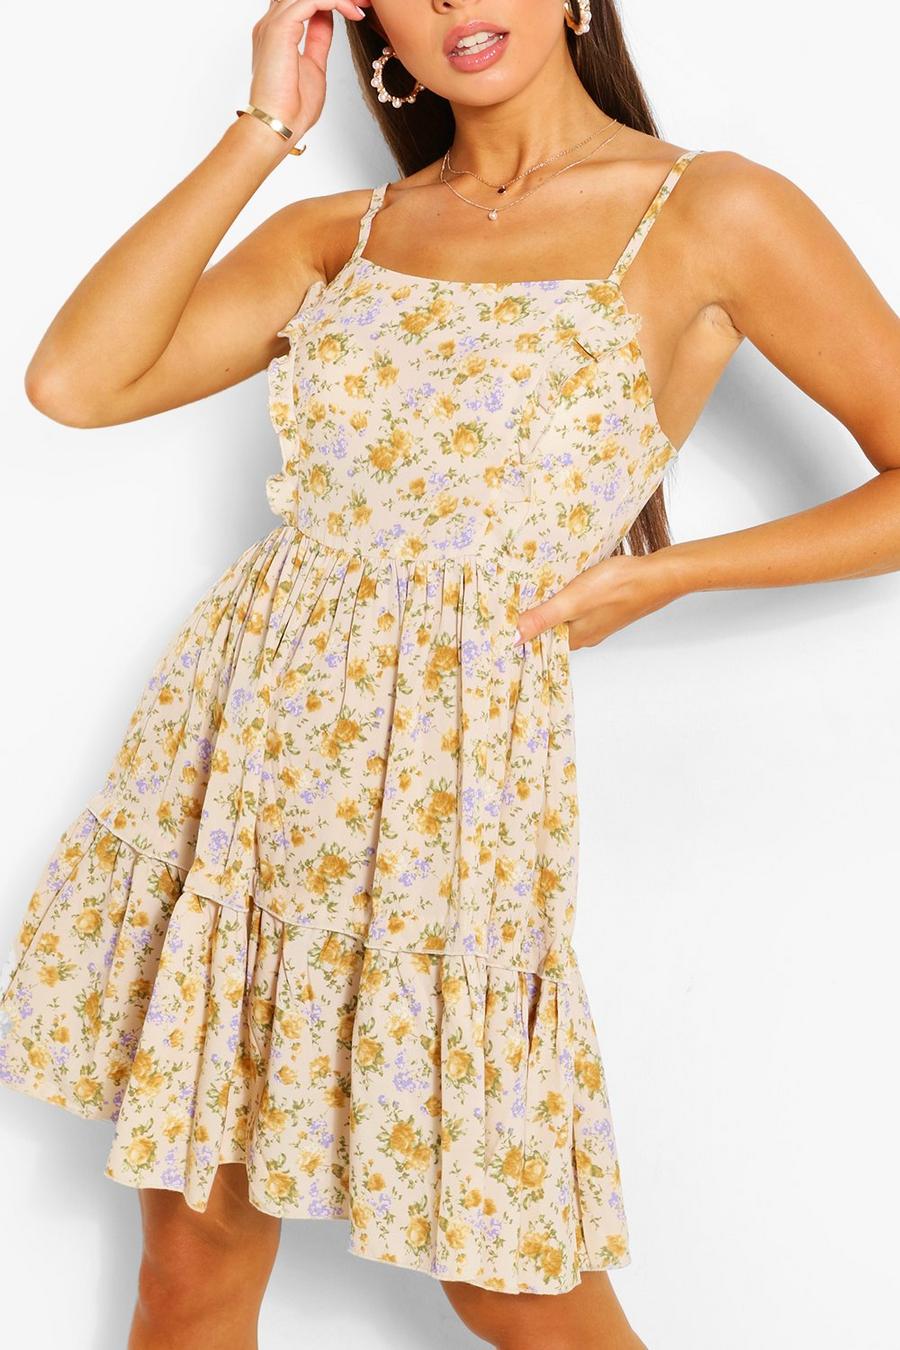 Gestuftes Swing-Kleid mit schmalen Trägern und Blumenmuster, Senfgelb yellow